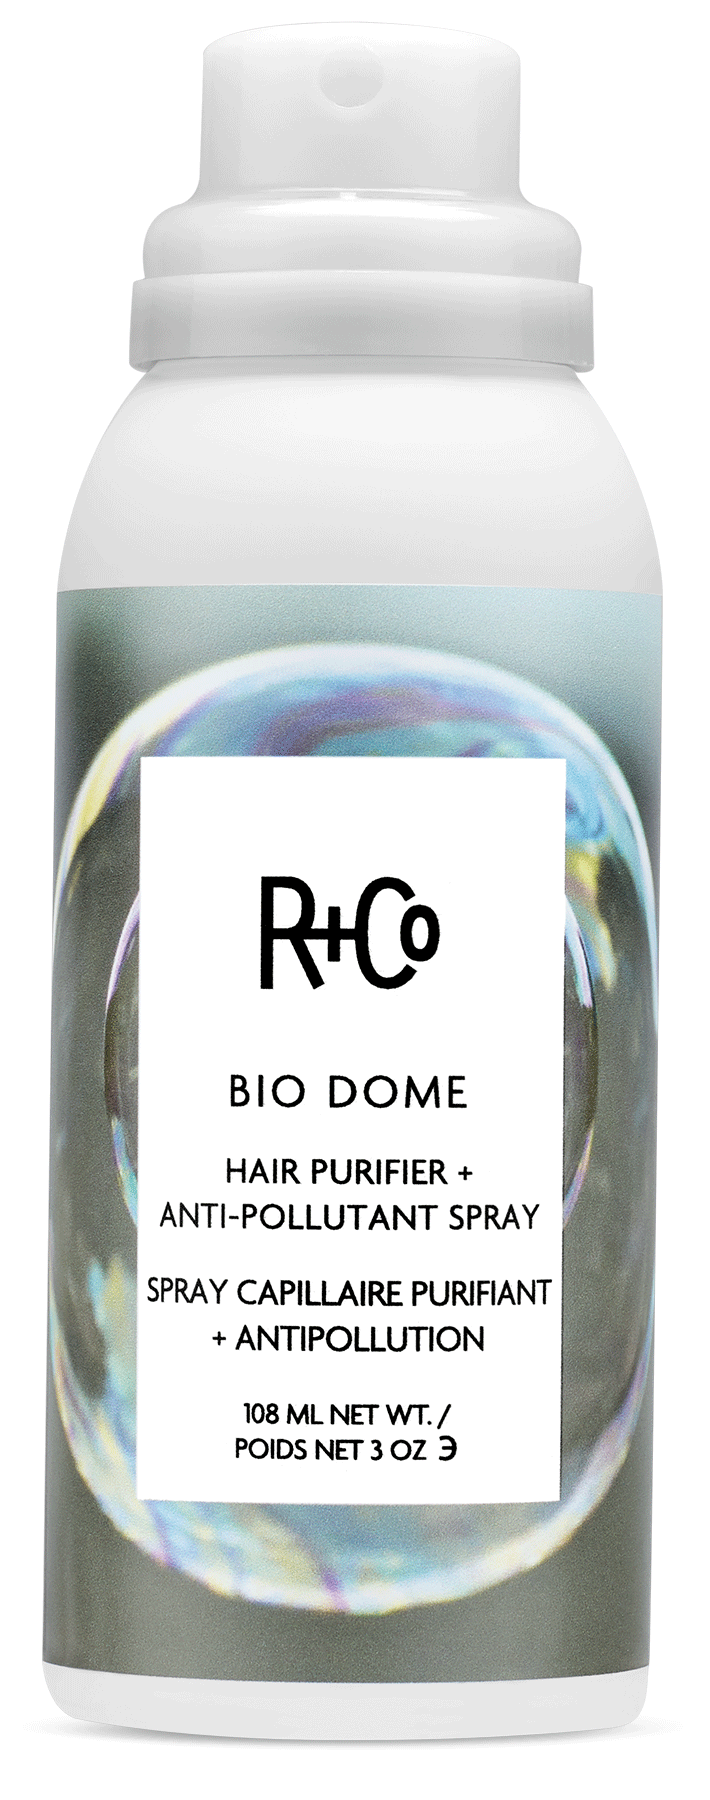 Bio Dome Hair Purifier & Anti-Pollutant Spray